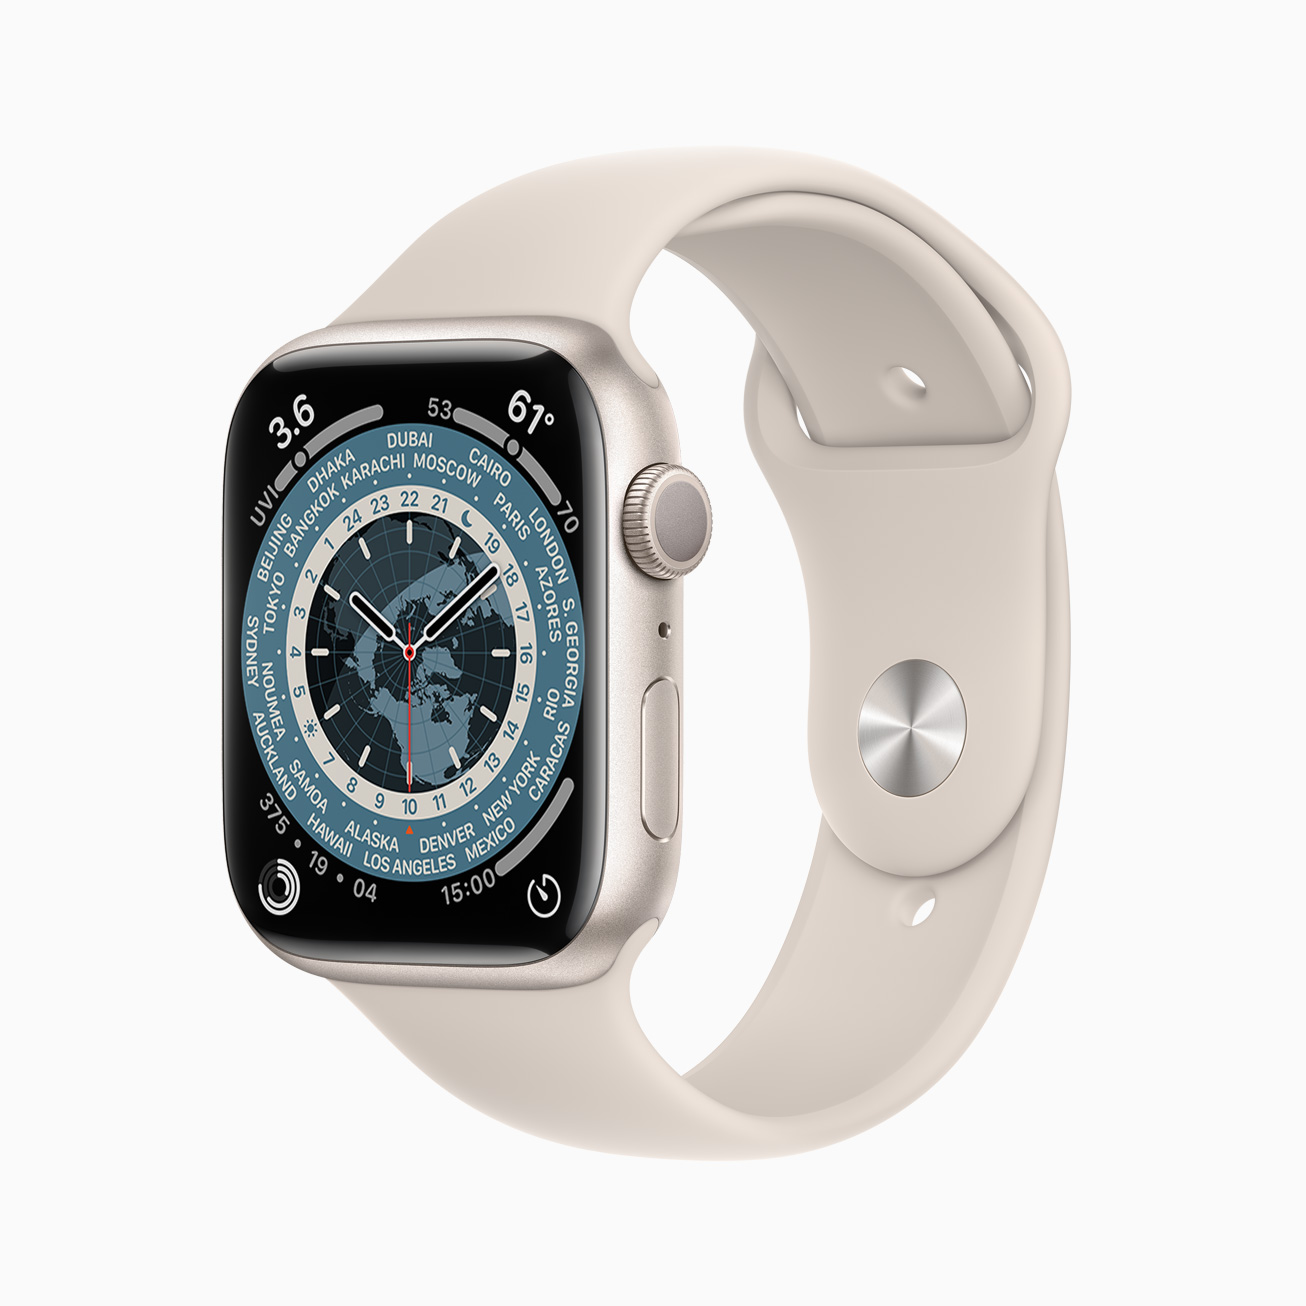 Apple Watch Series 7 宣布於 10/8 訂購、10/15 開賣 | Apple News, Apple Watch Series 7, watchOS 8, 蘋果手錶 | iPhone News 愛瘋了